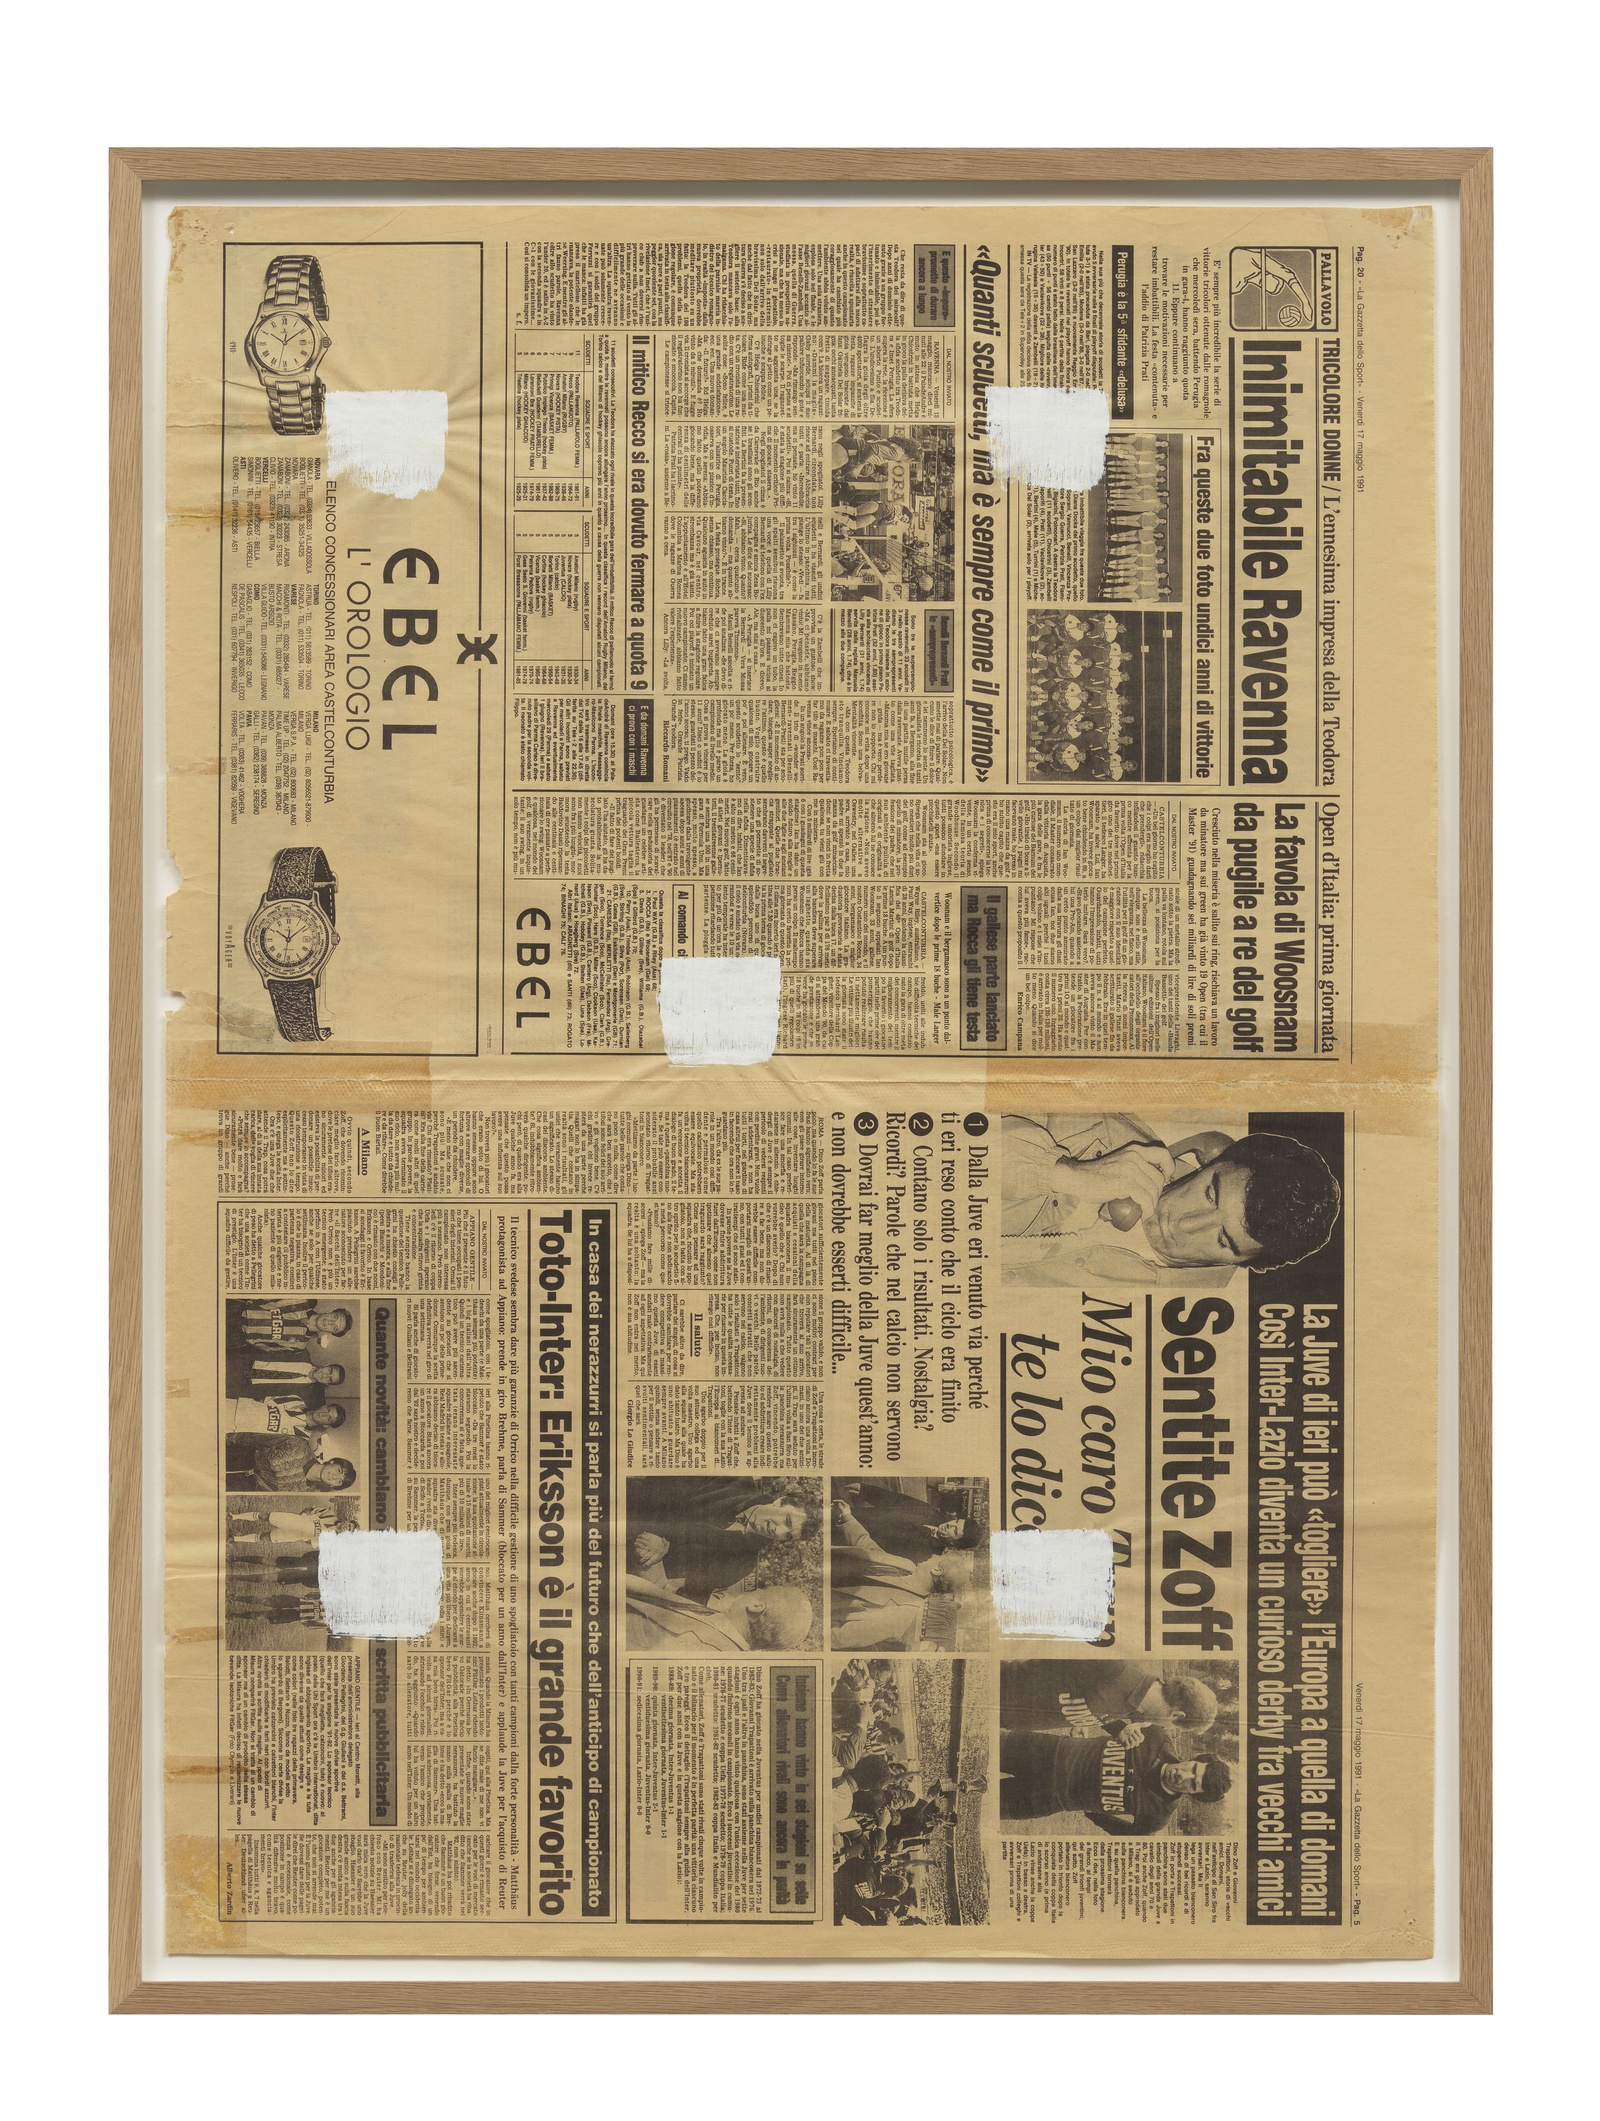 Niele ToroniEmpreintes de pinceau n° 50 appliquées à intervalles réguliers de 30 cm, 1991White acrylic on newspaper79 x 57.5 cm